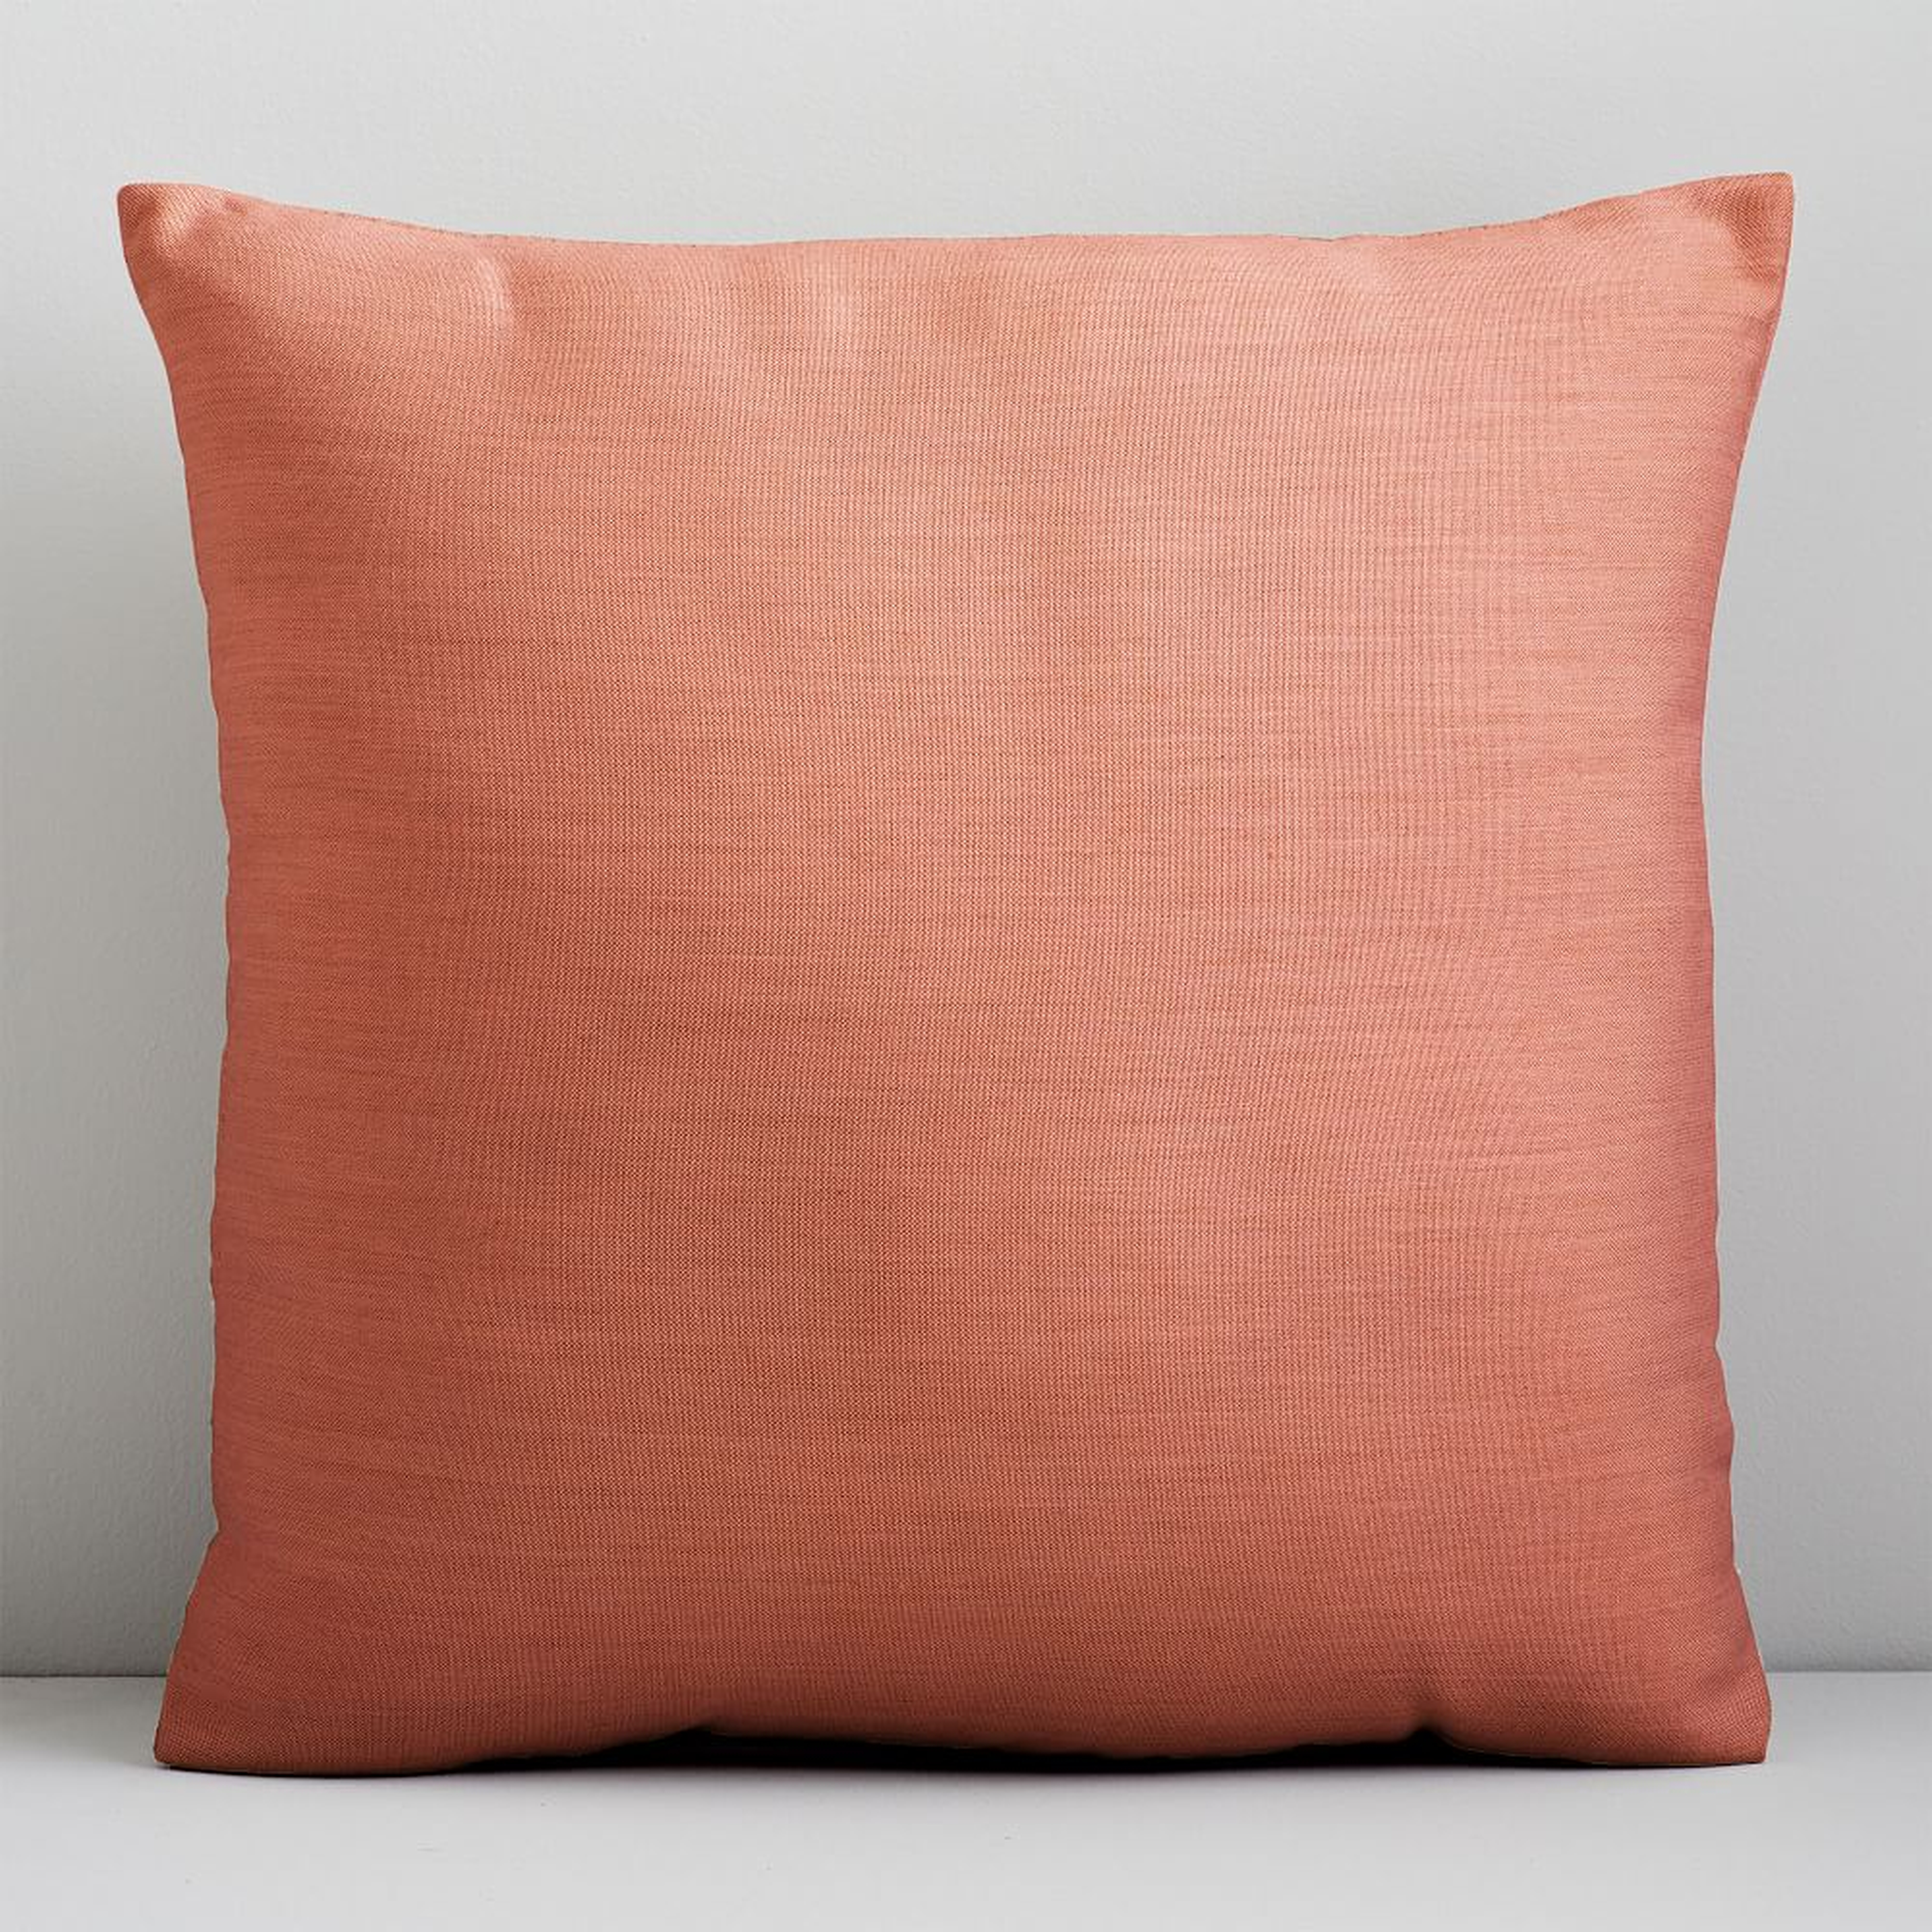 Sunbrella Indoor/Outdoor Cast Pillow, 20"x20", Coral - West Elm